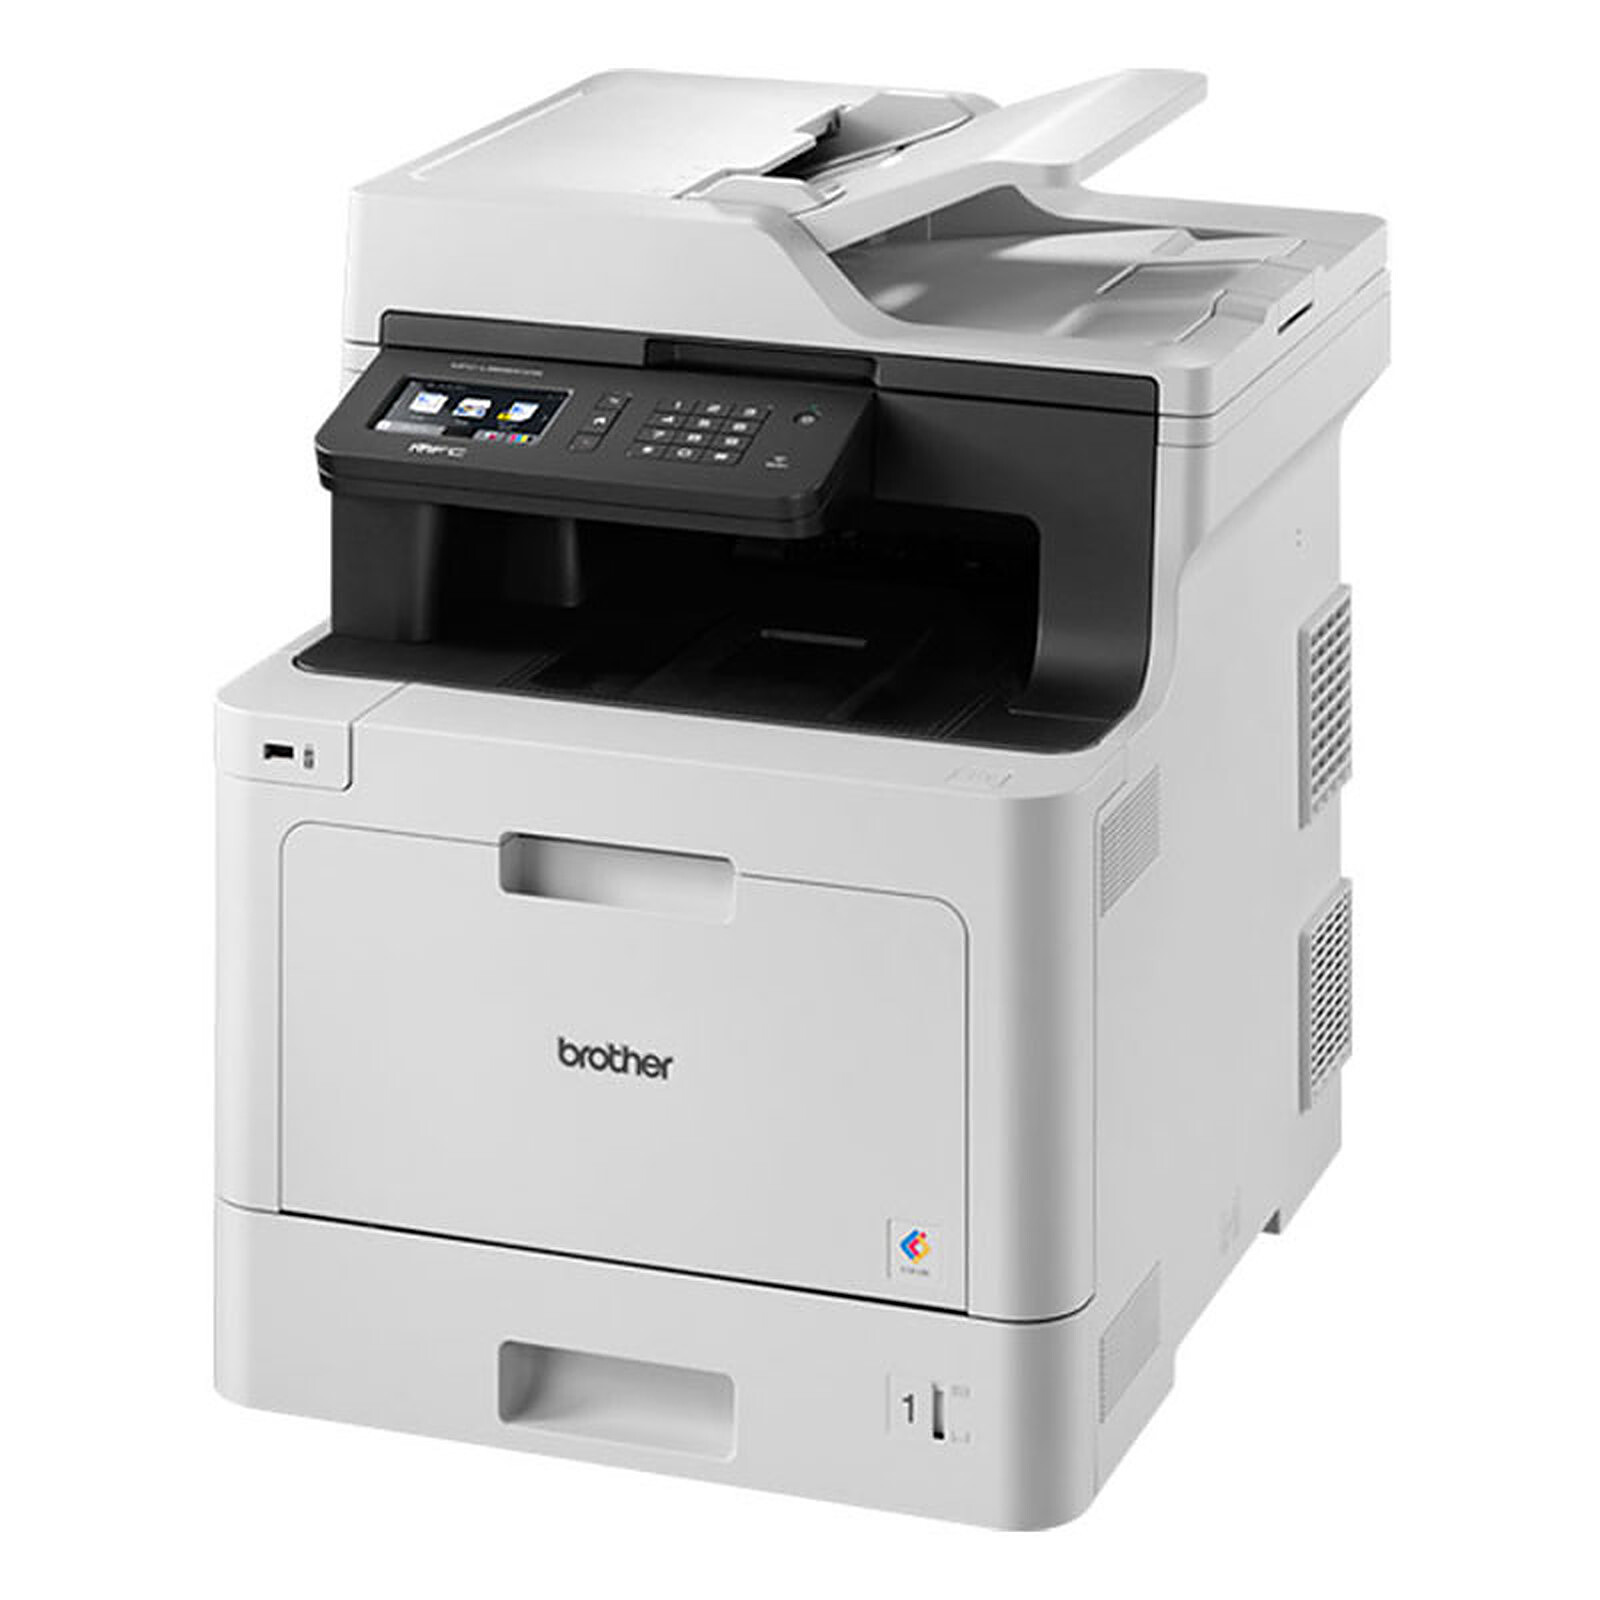 Brother MFC-L8390CDW, una impresora multifunción compacta para